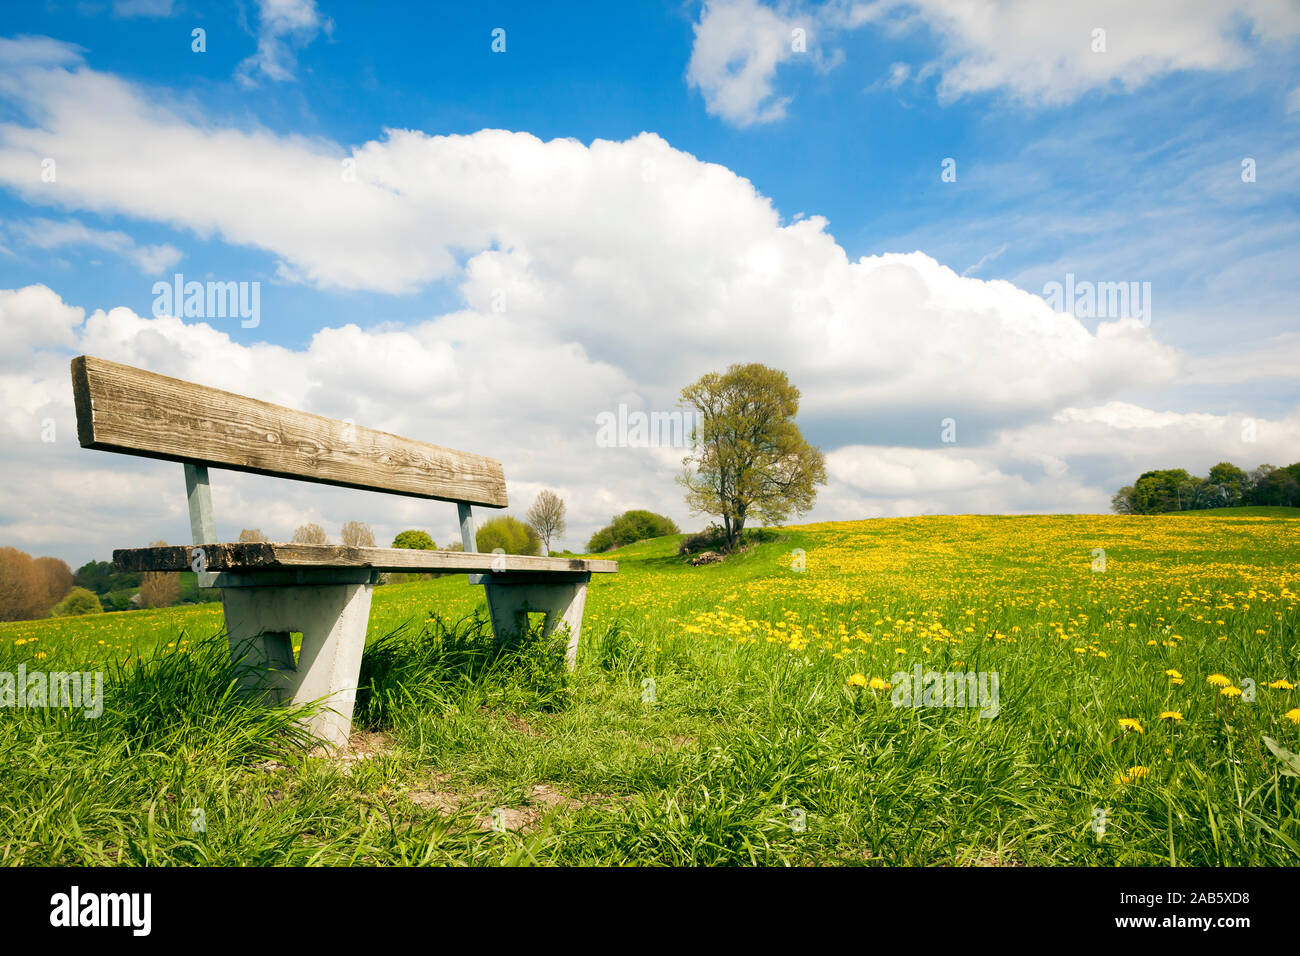 Eine schoene Sitzbank auf einer Blumenwiese Stock Photo